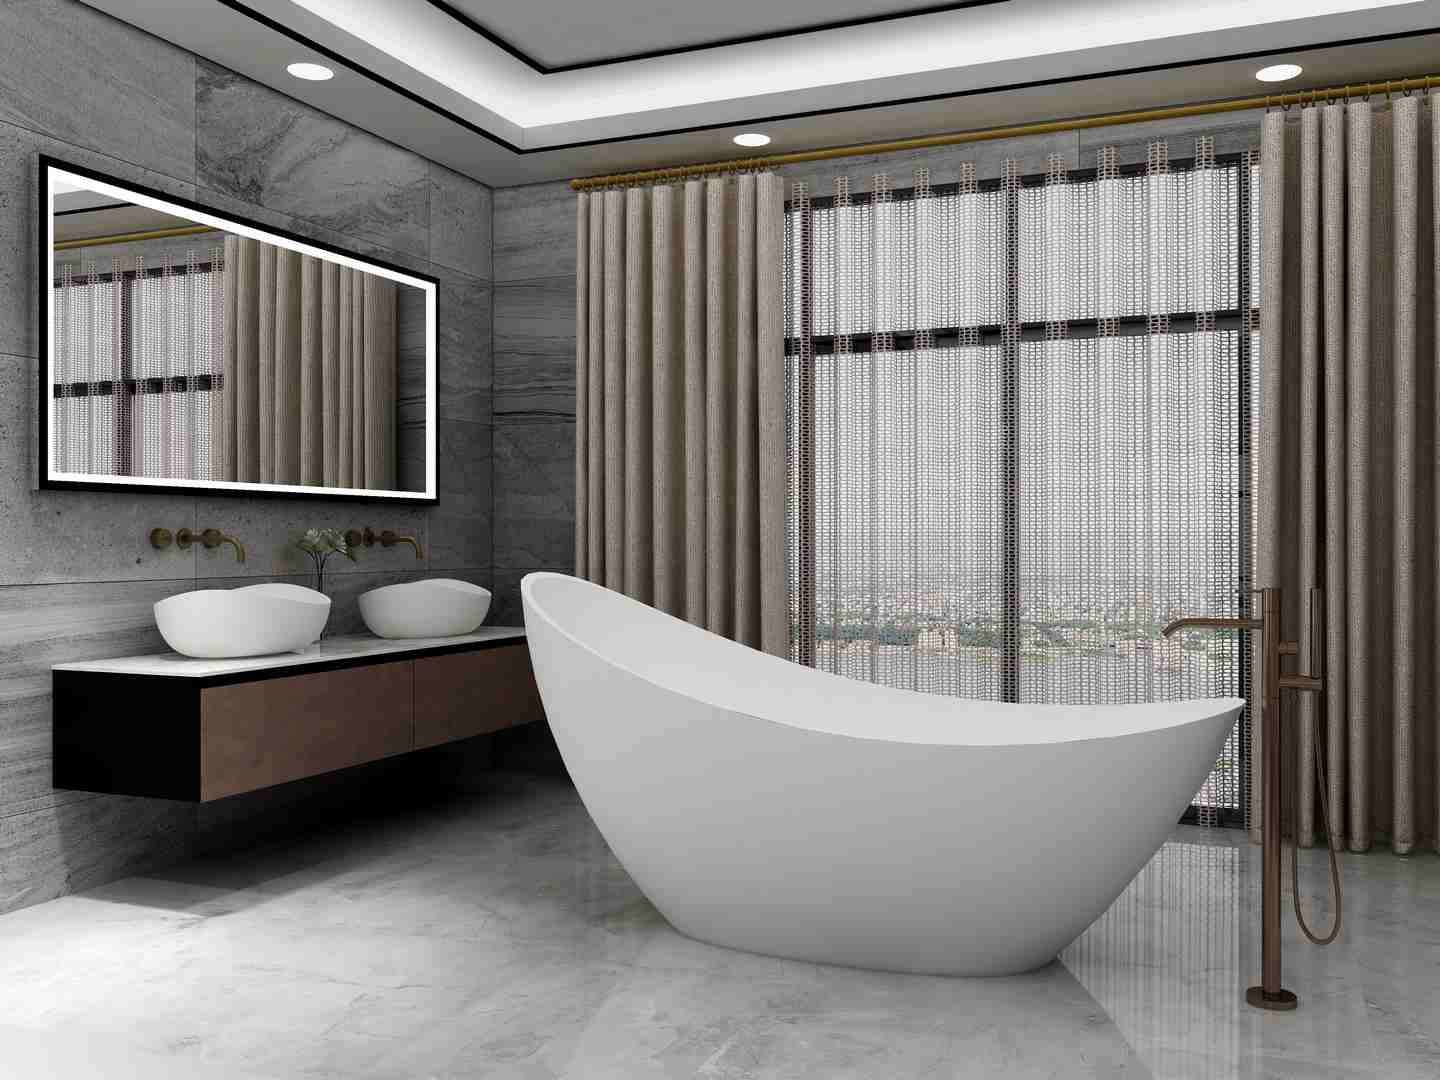 Crescent-shaped bathtub from Cpingao